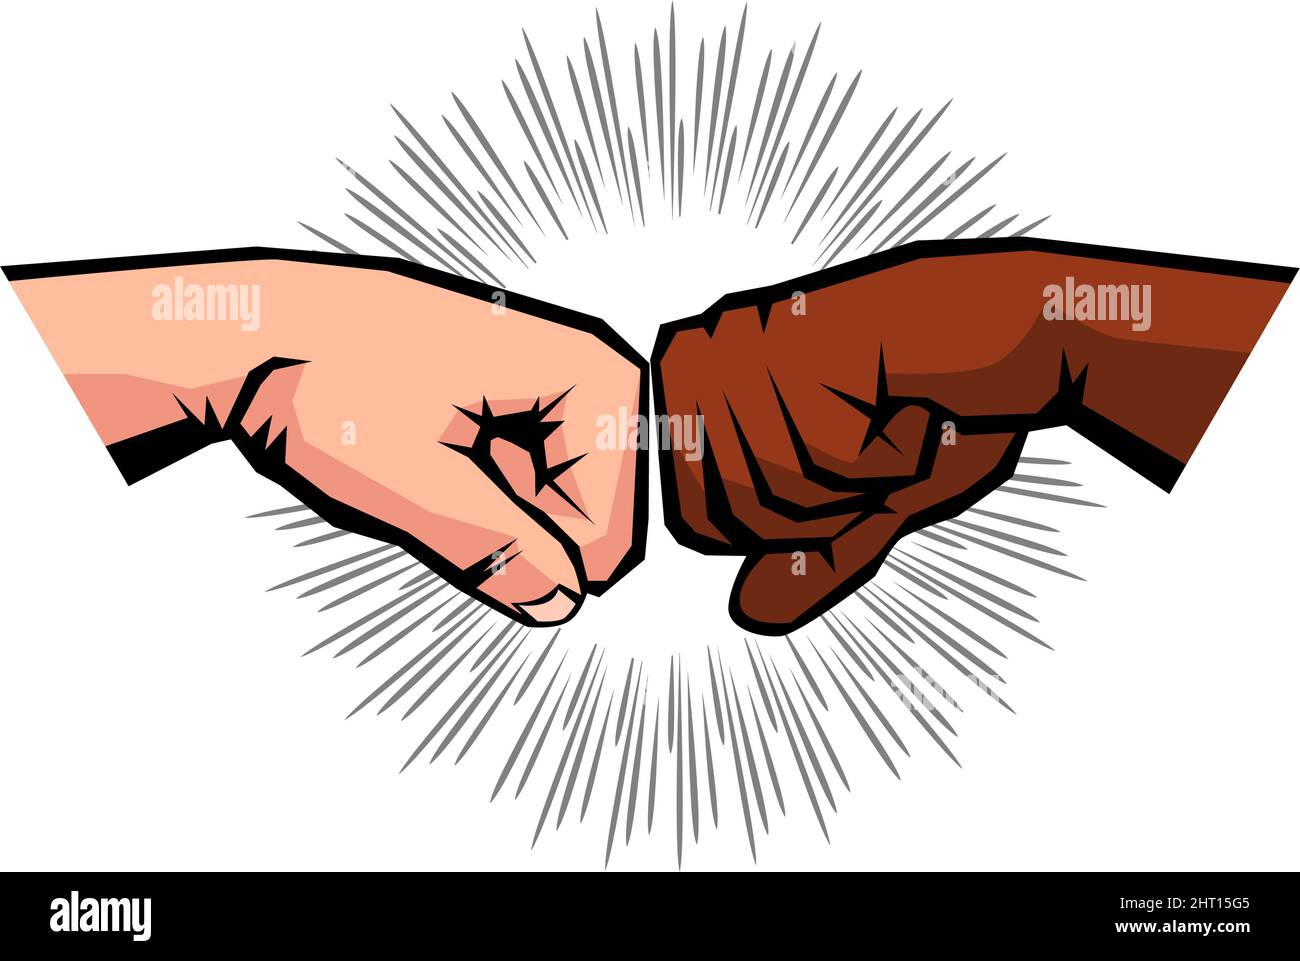 Begrüßung von zwei geballten Fäusten männlicher Hände. Interracial Freundschaft zwischen Schwarzen und Weißen. Vektor auf transparentem Hintergrund Stock Vektor